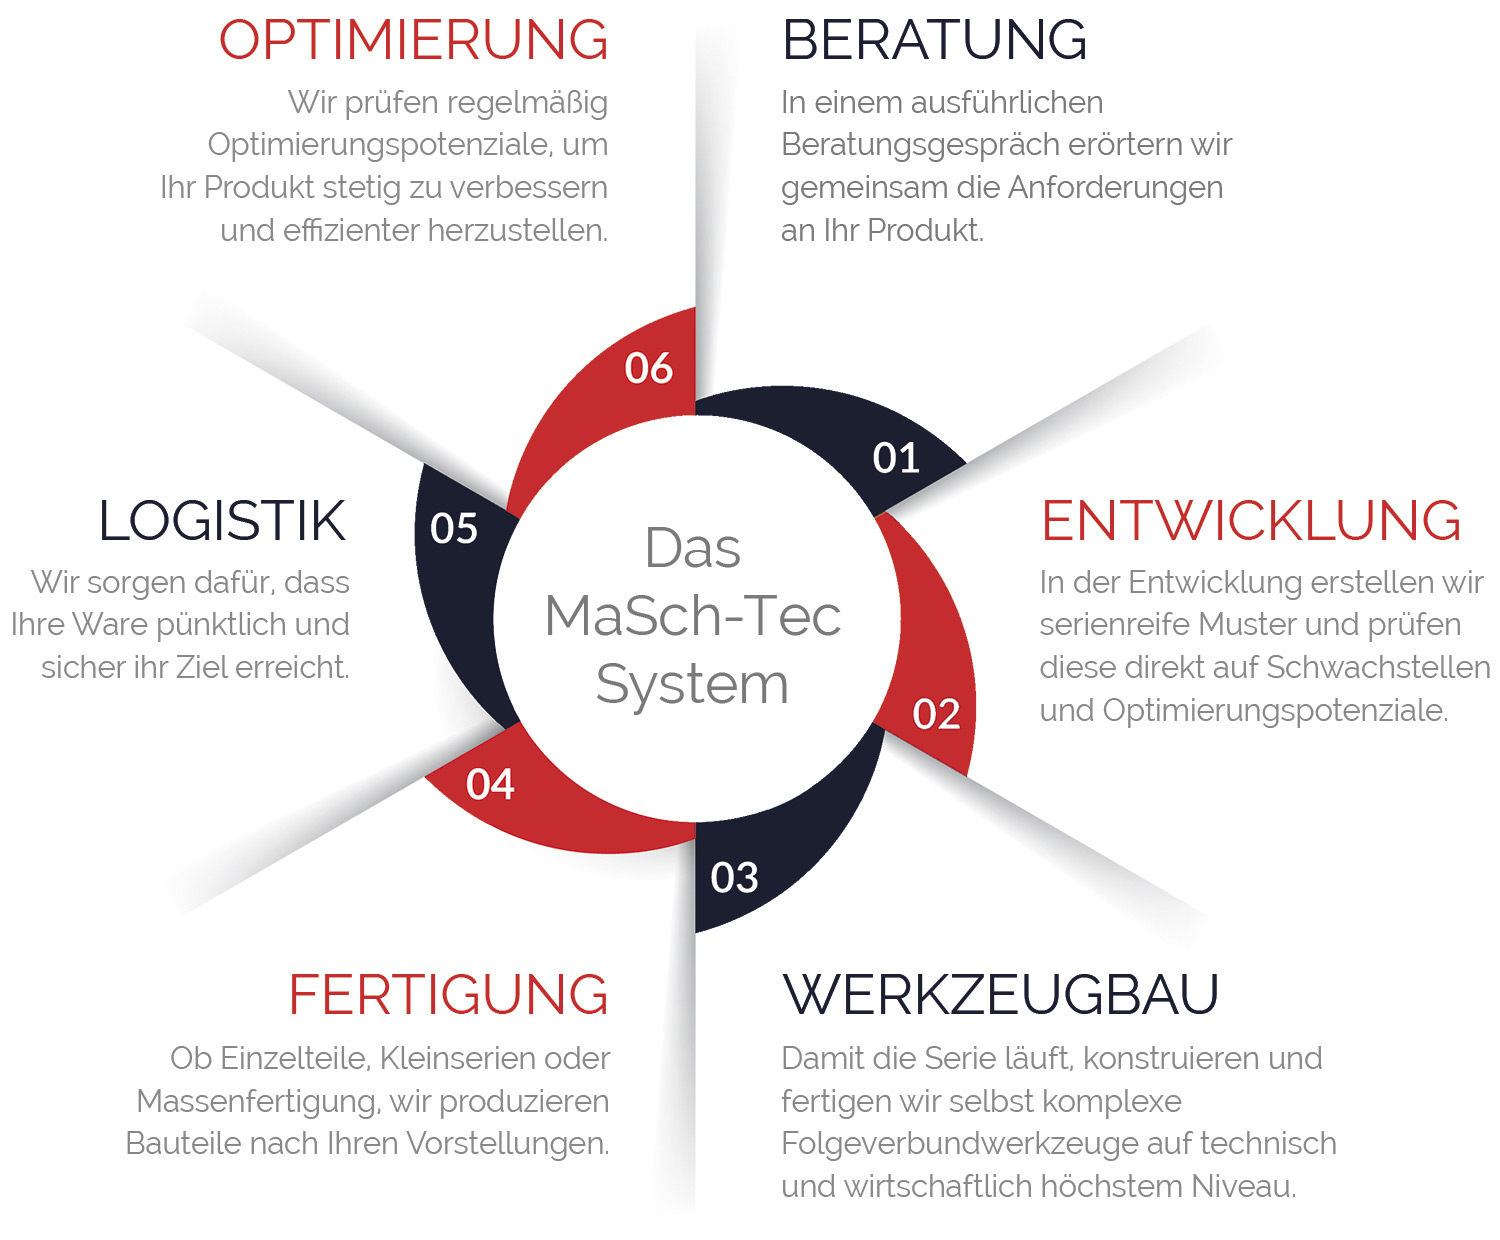 Das MaSch-Tec System besteht aus 6 Phasen: Beratung, Entwicklung, Werkzeugbau, Fertigung, Logistik und Optimierung.